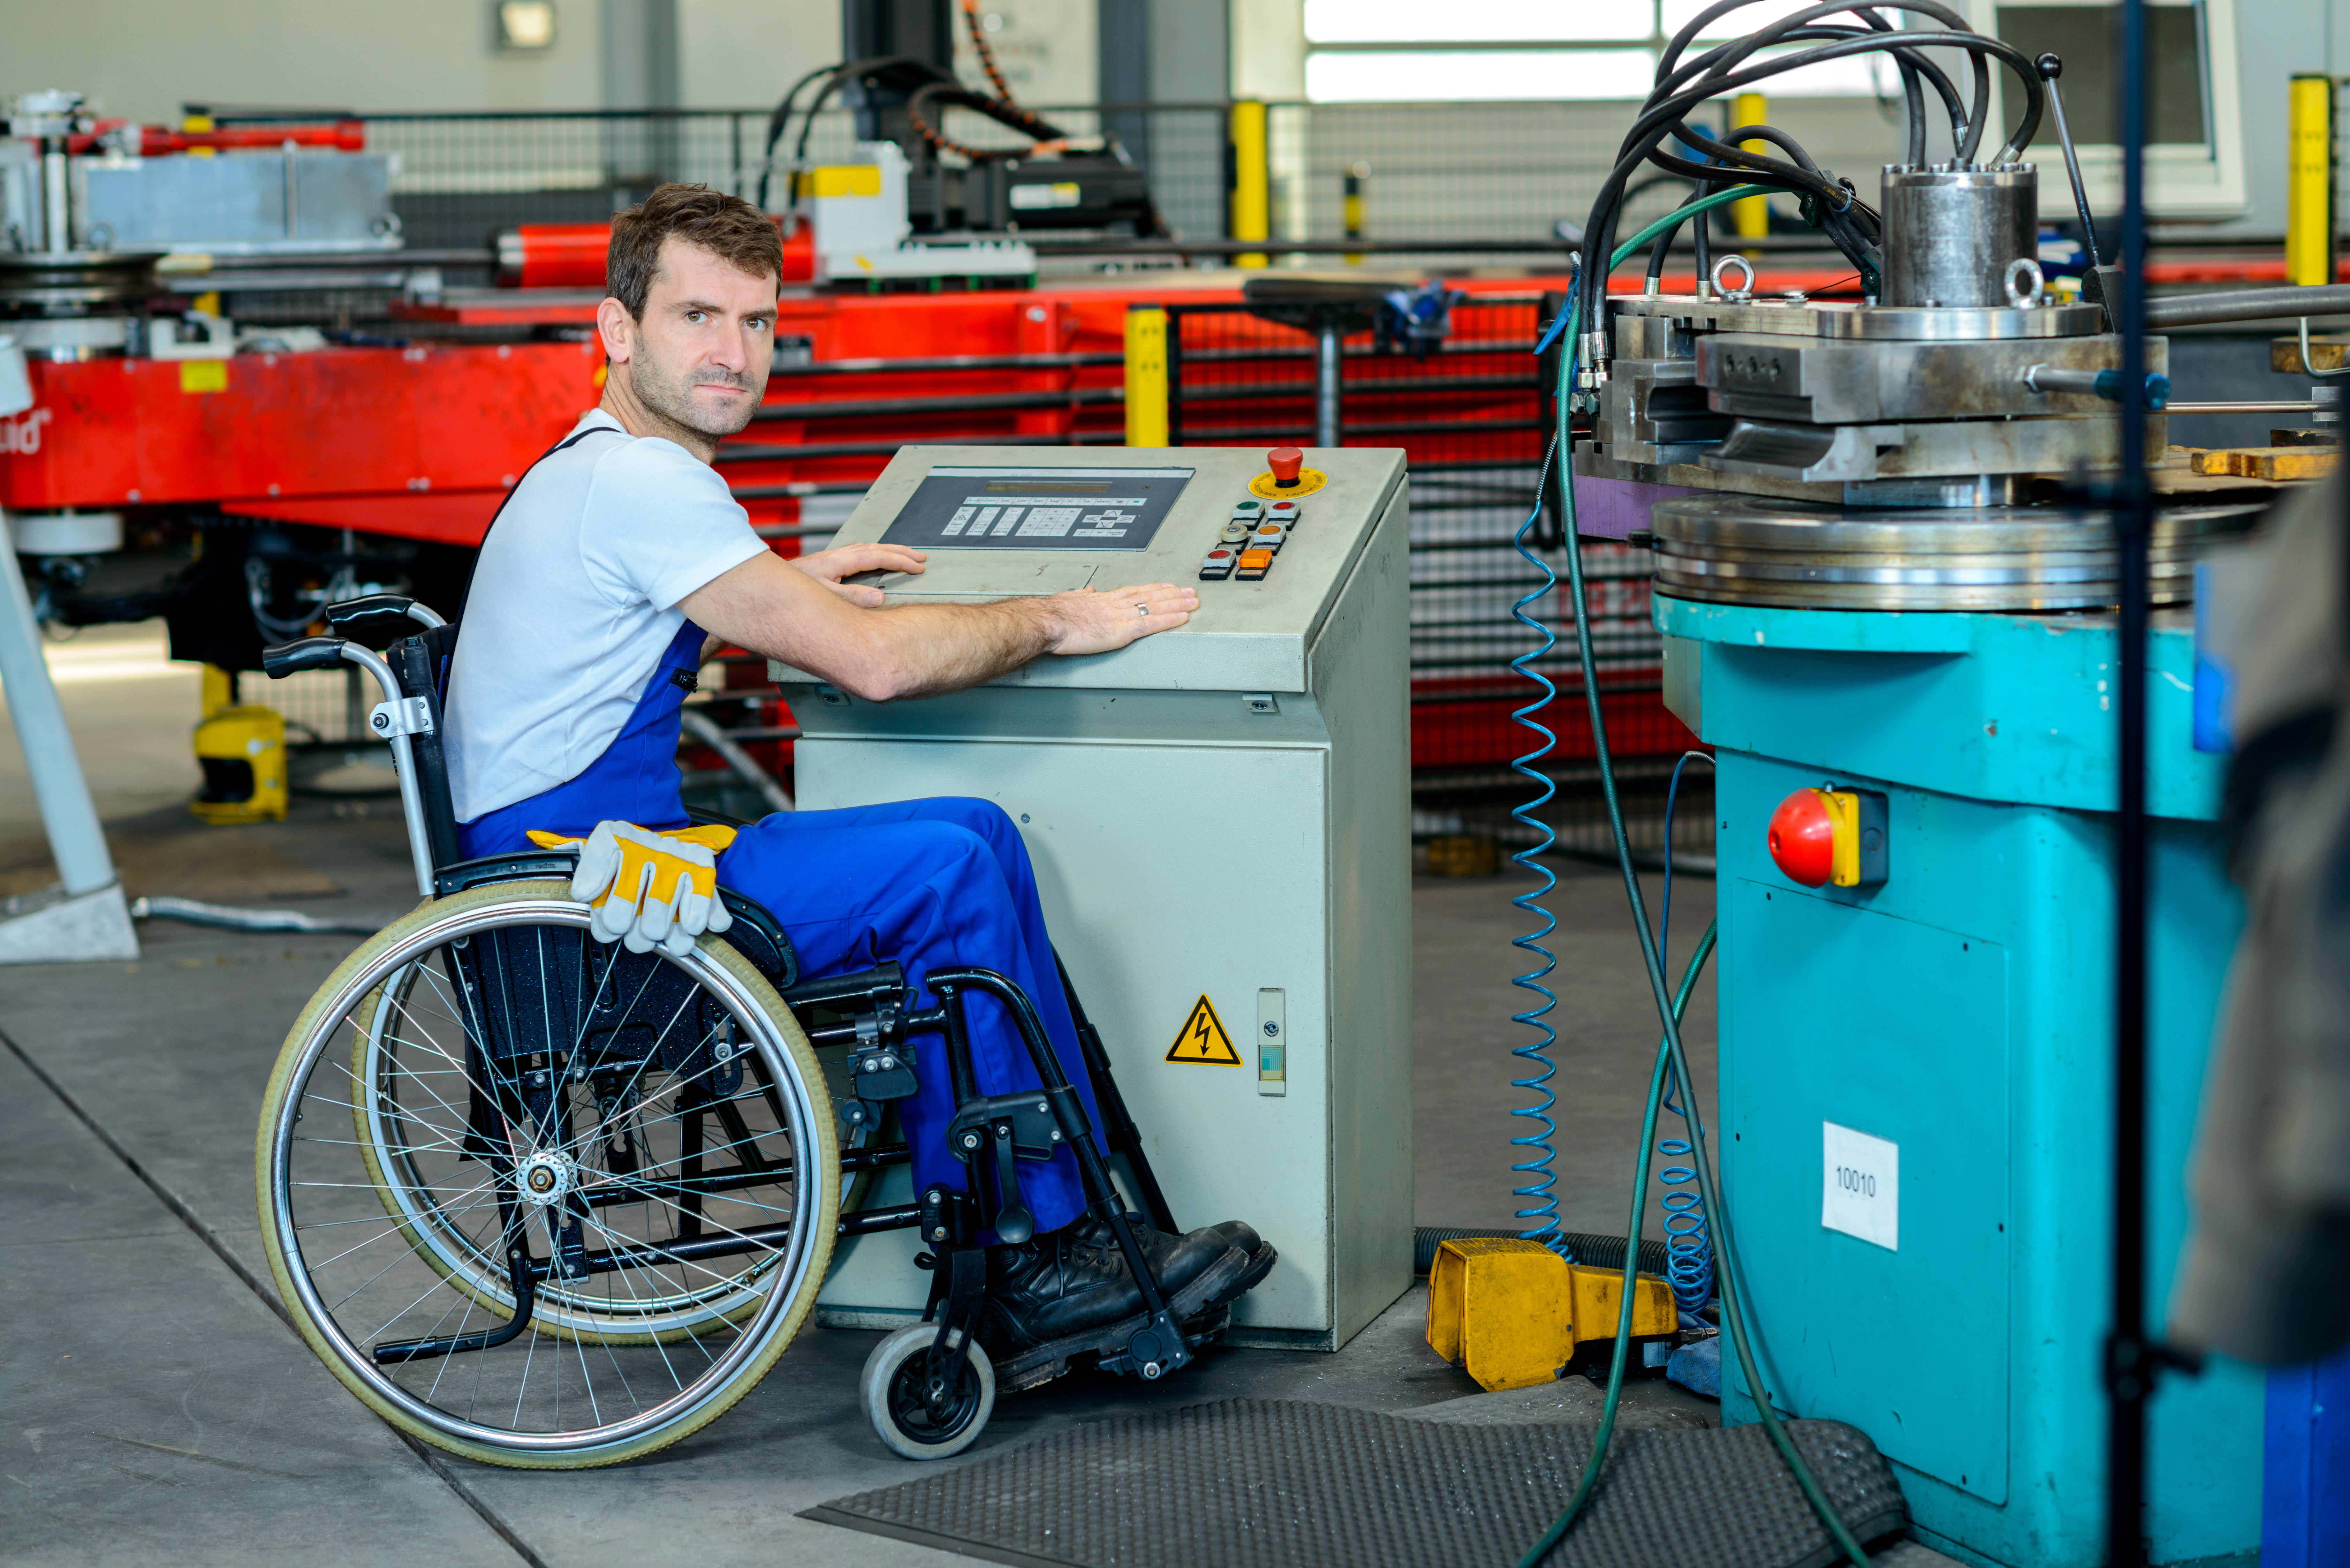 CNC Machinist in wheelchair